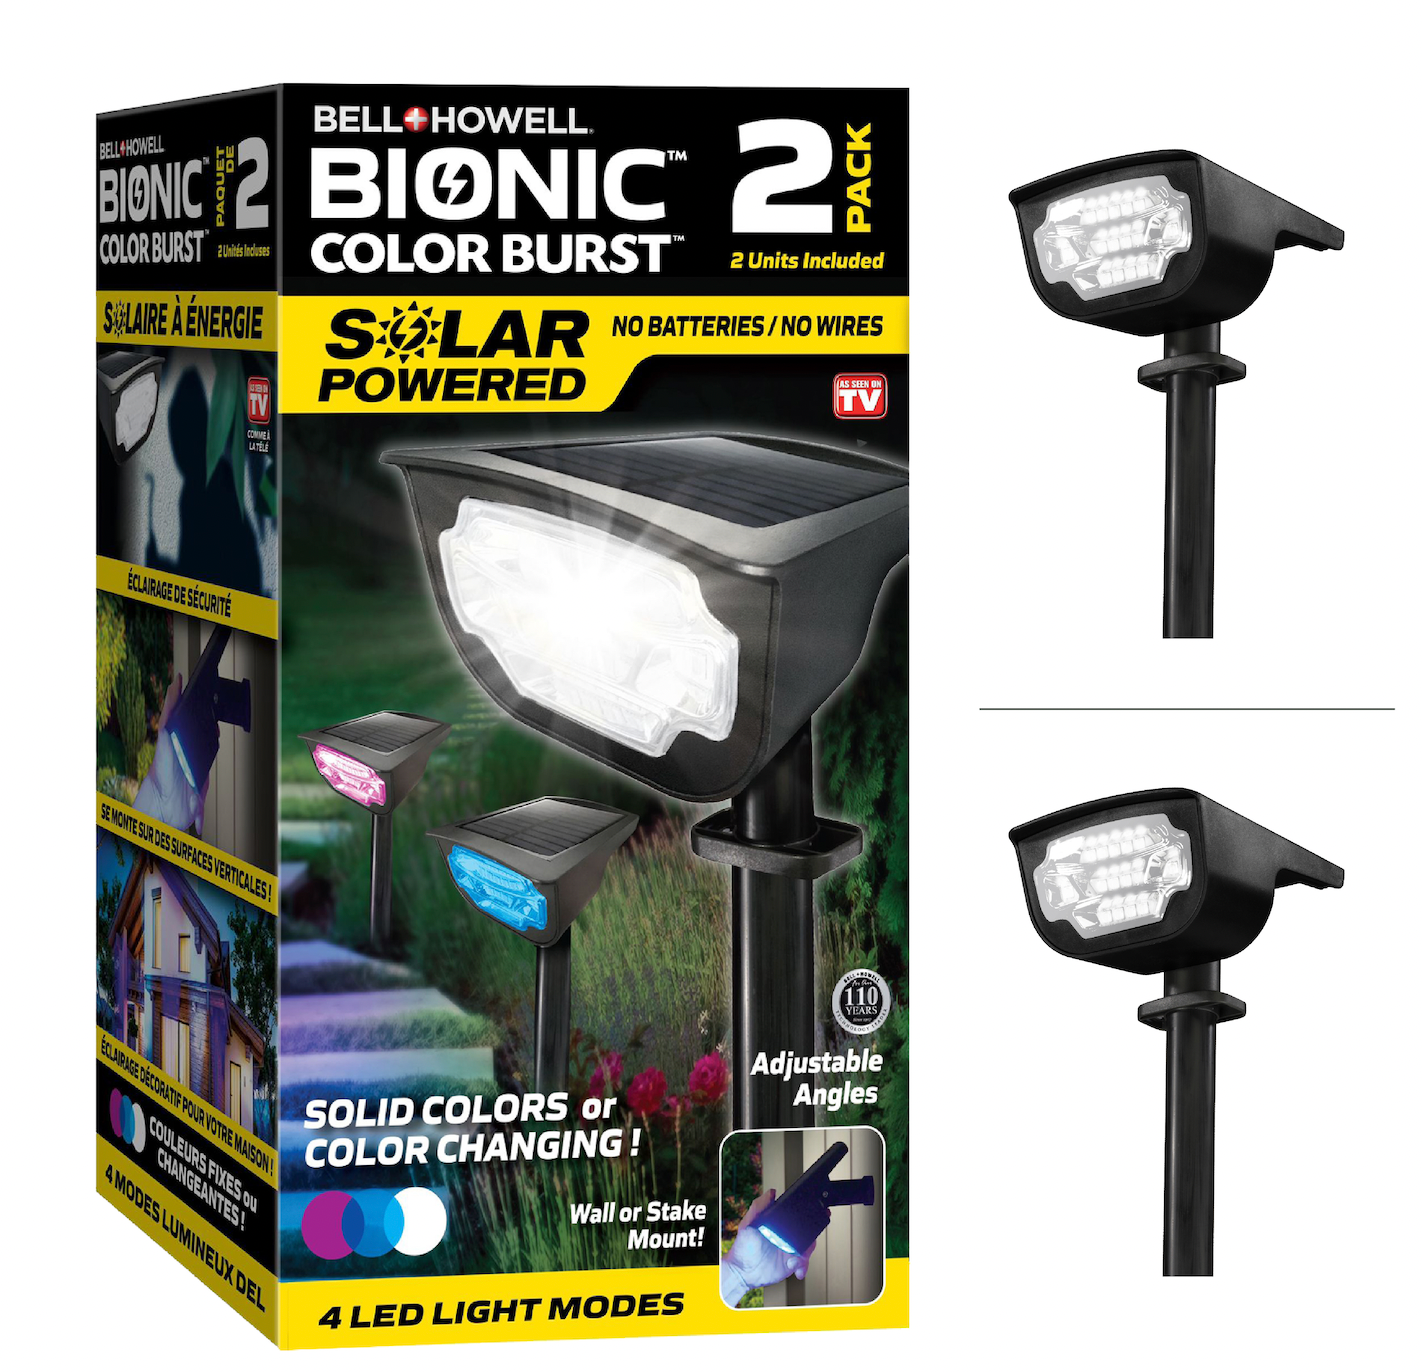 Bell + Howell Bionic Color Burst Solar Powered Spotlight (2 pack)